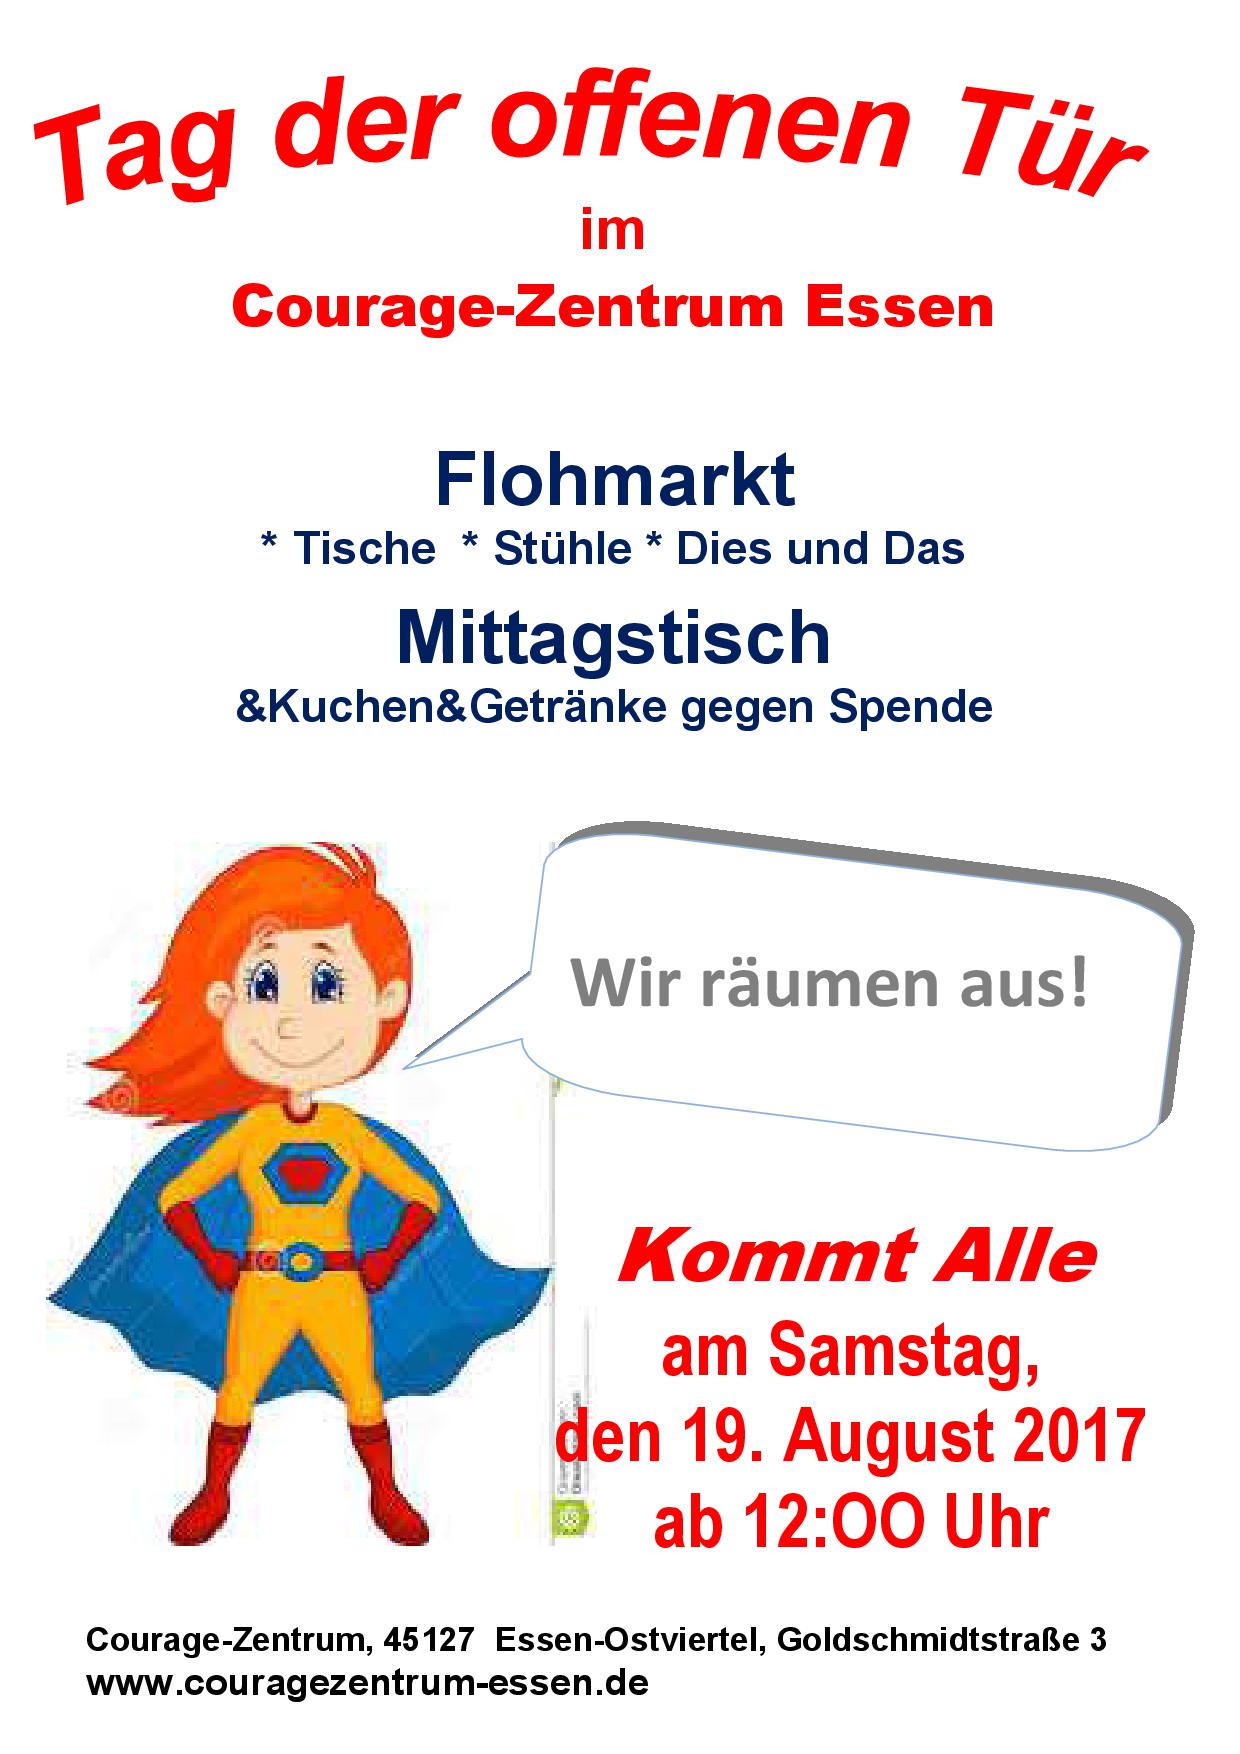 Samstag, 19.8. ab 12 Uhr Flohmarkt im Courage-Zentrum!